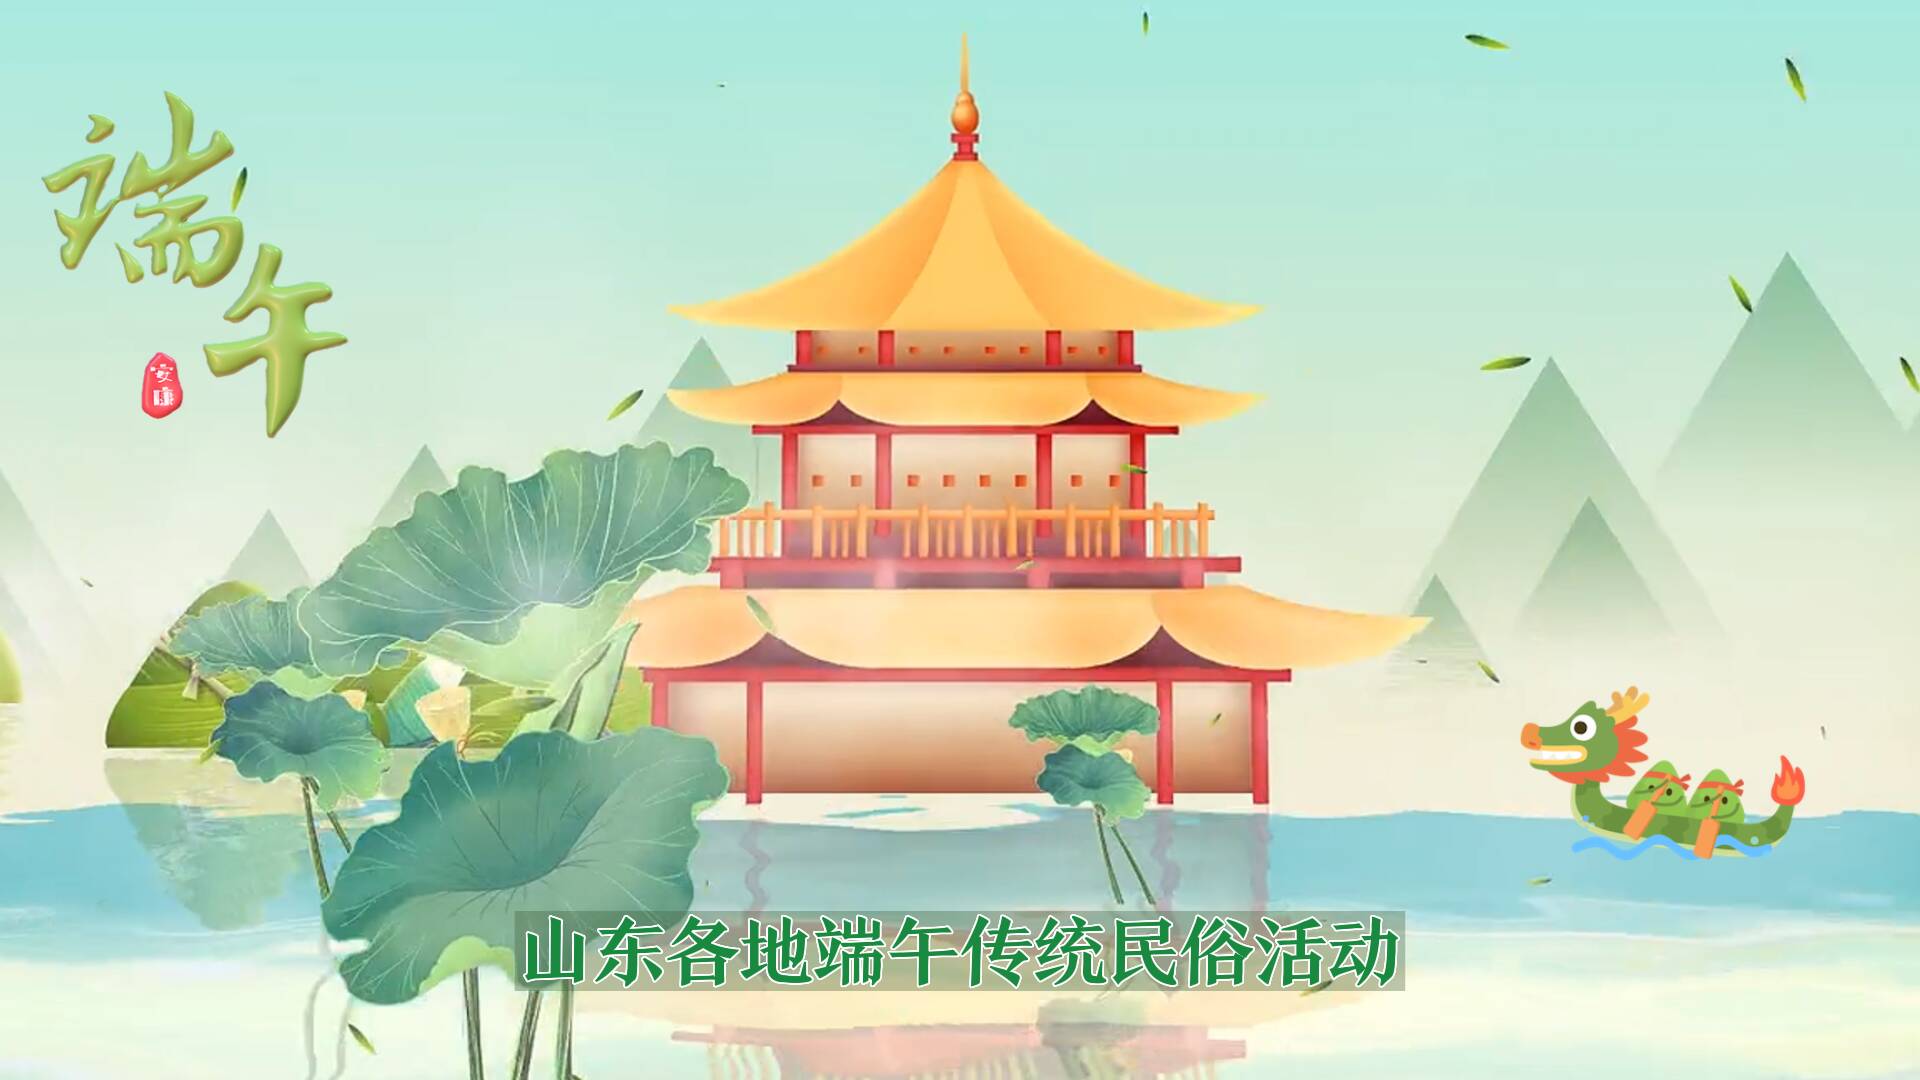 赛龙舟、包粽子……端午假期 山东各地推出传统民俗“粽”情玩活动